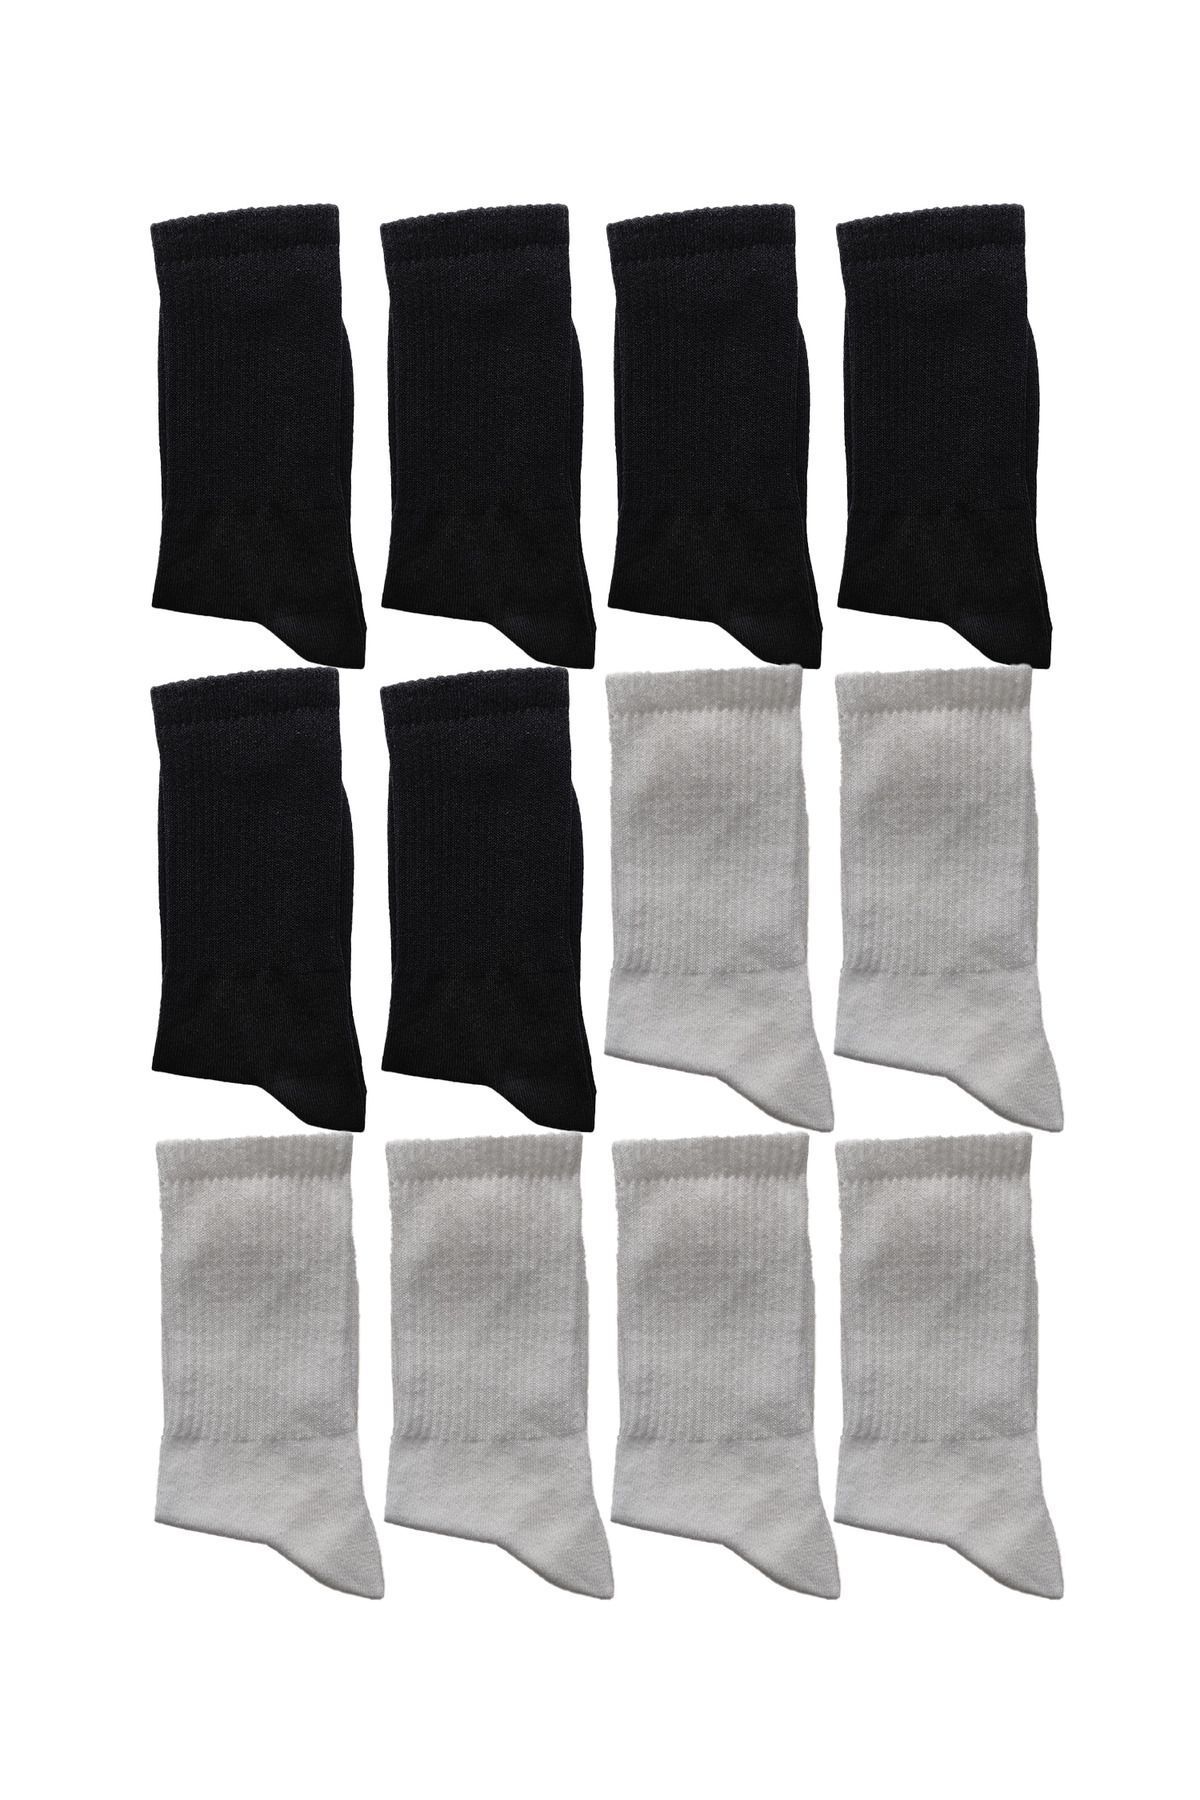 KAYSSOCK 12 Çift Unisex Siyah Ve Beyaz Karışık Tenis Çorap